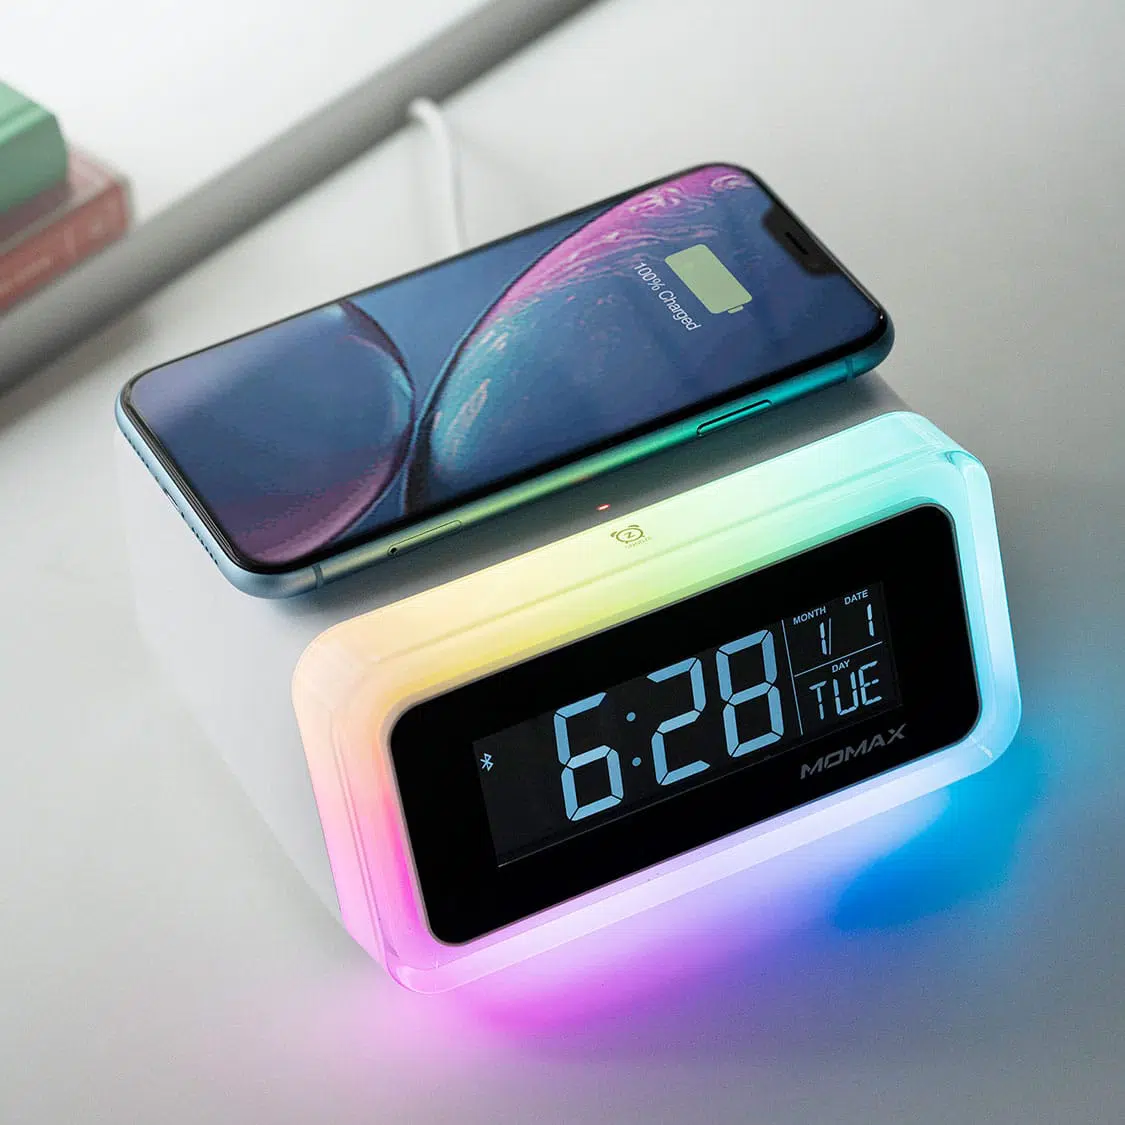 นาฬิกาปลุกดิจิตอลอัจริยะ Momax รุ่น Q.CLOCK 2 Digital Clock with Wireless Charger - สีขาว